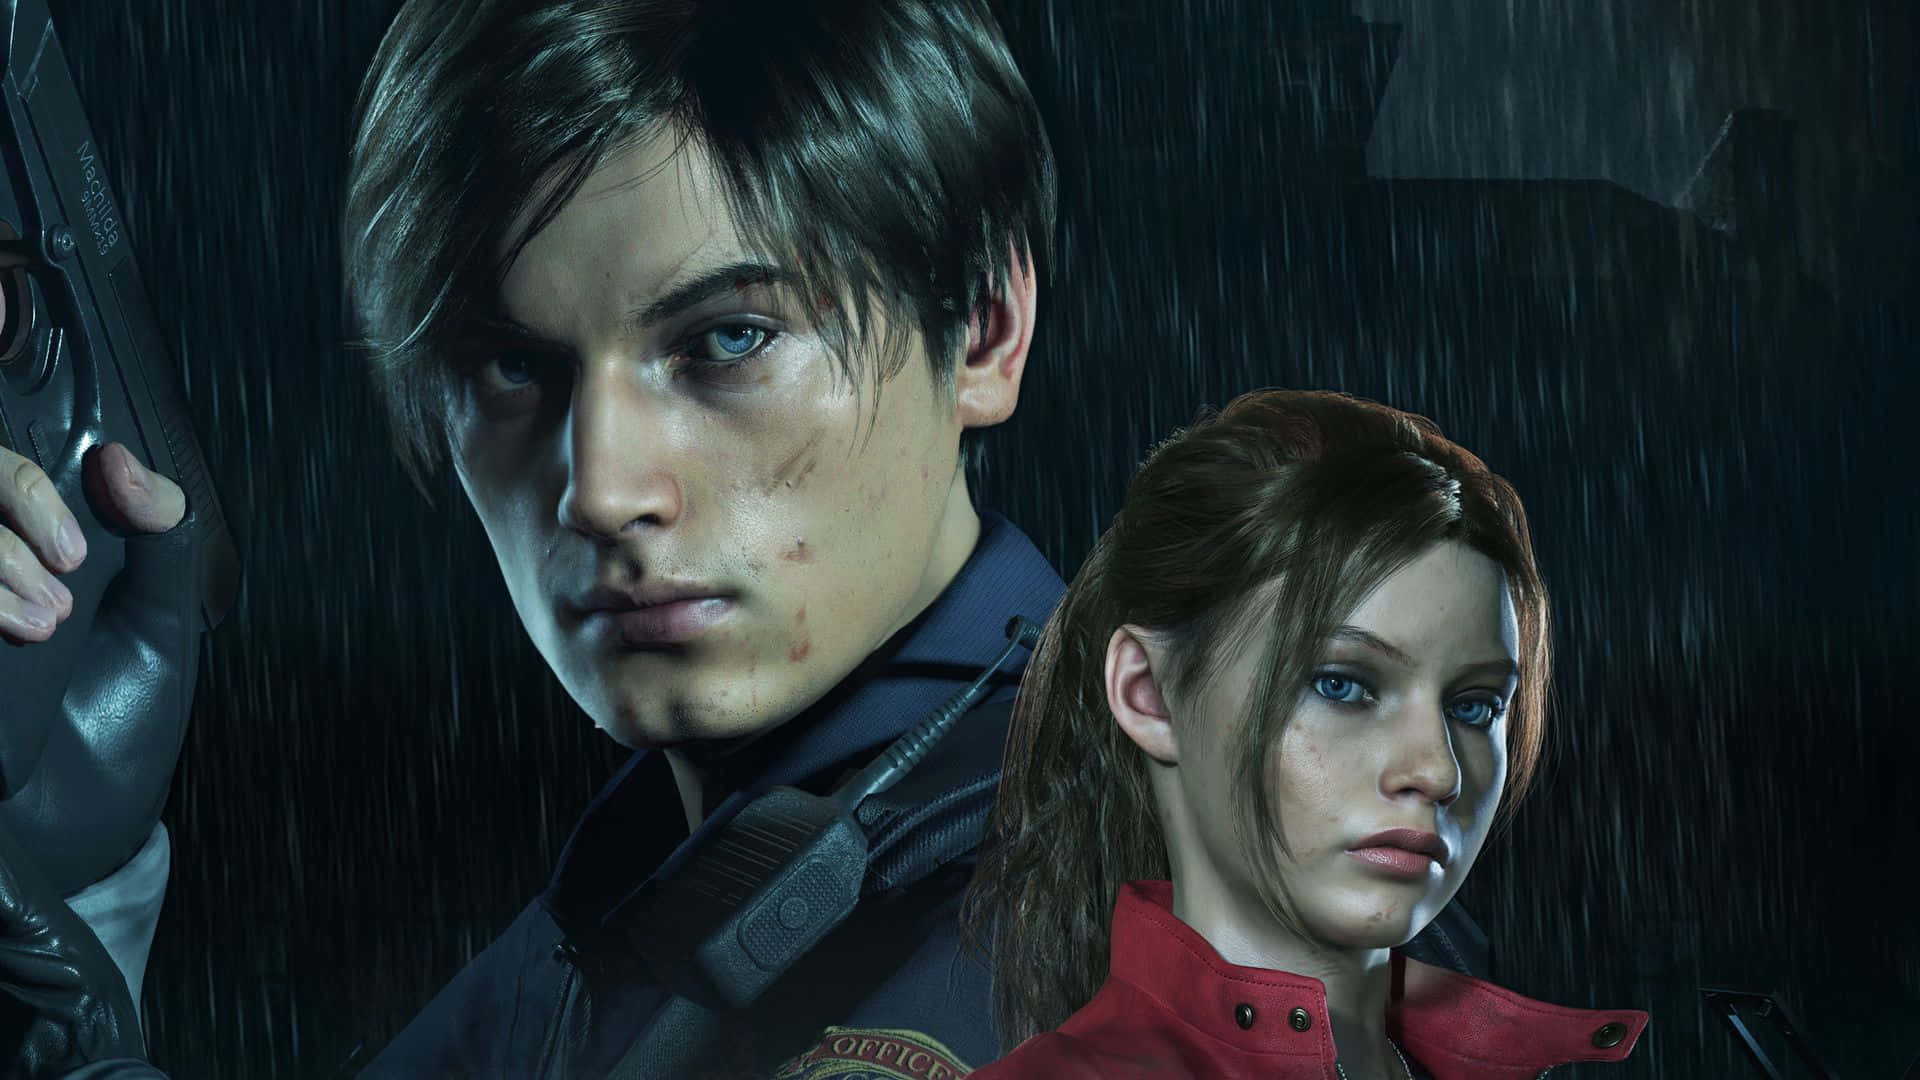 Fundode Tela Resident Evil 2, Dimensões 1920x1080, Com O Pôster De Leon E Claire.